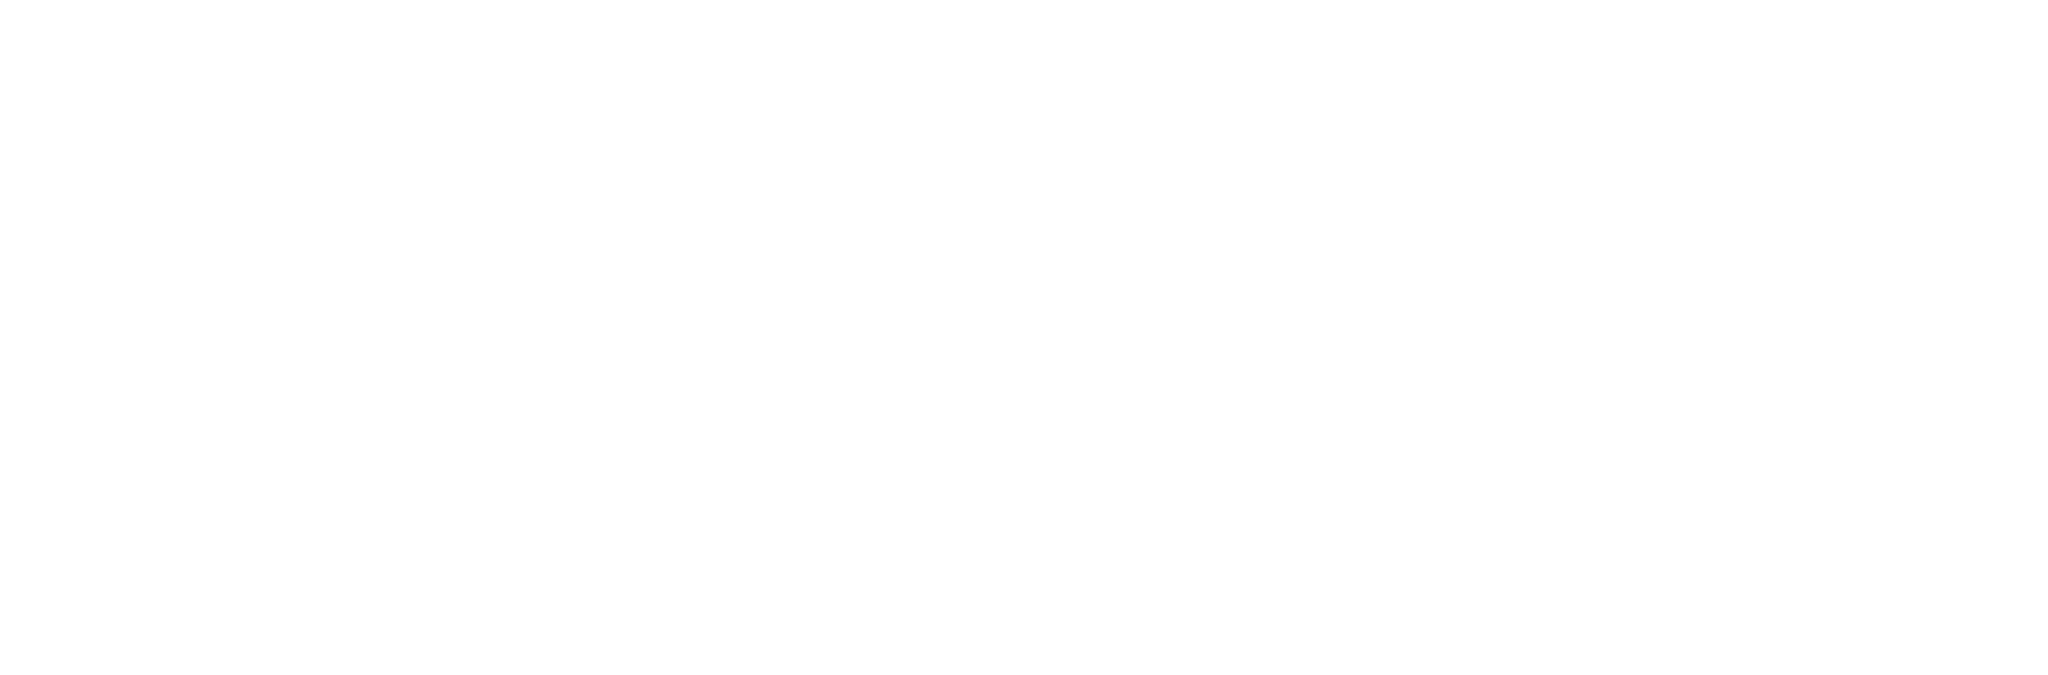 Gift&Share合同会社